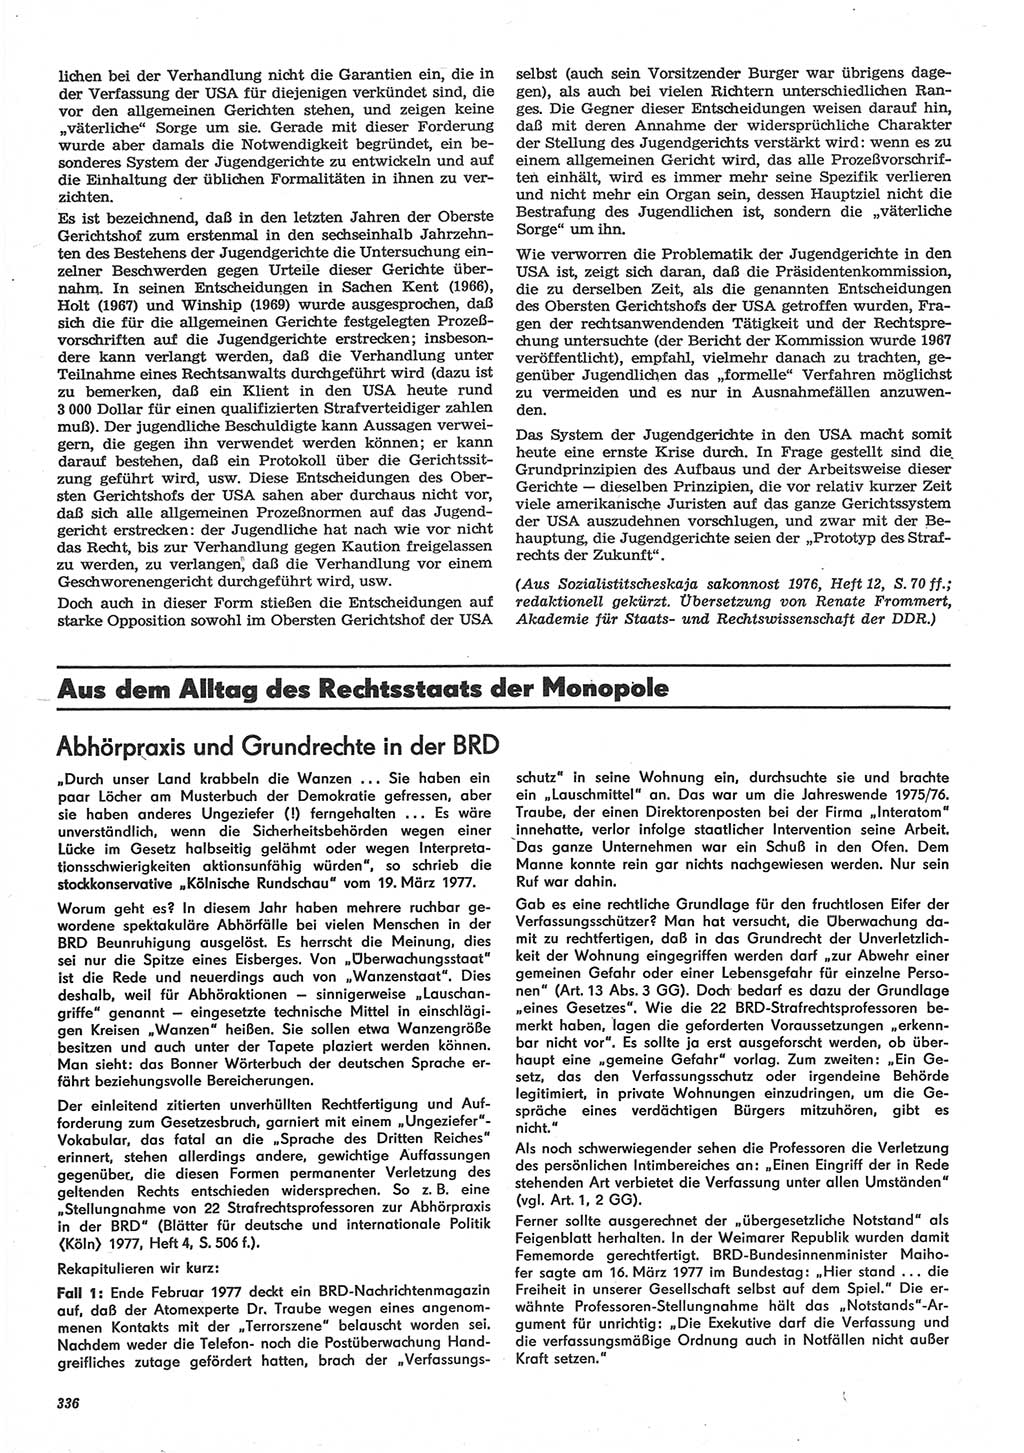 Neue Justiz (NJ), Zeitschrift für Recht und Rechtswissenschaft-Zeitschrift, sozialistisches Recht und Gesetzlichkeit, 31. Jahrgang 1977, Seite 336 (NJ DDR 1977, S. 336)